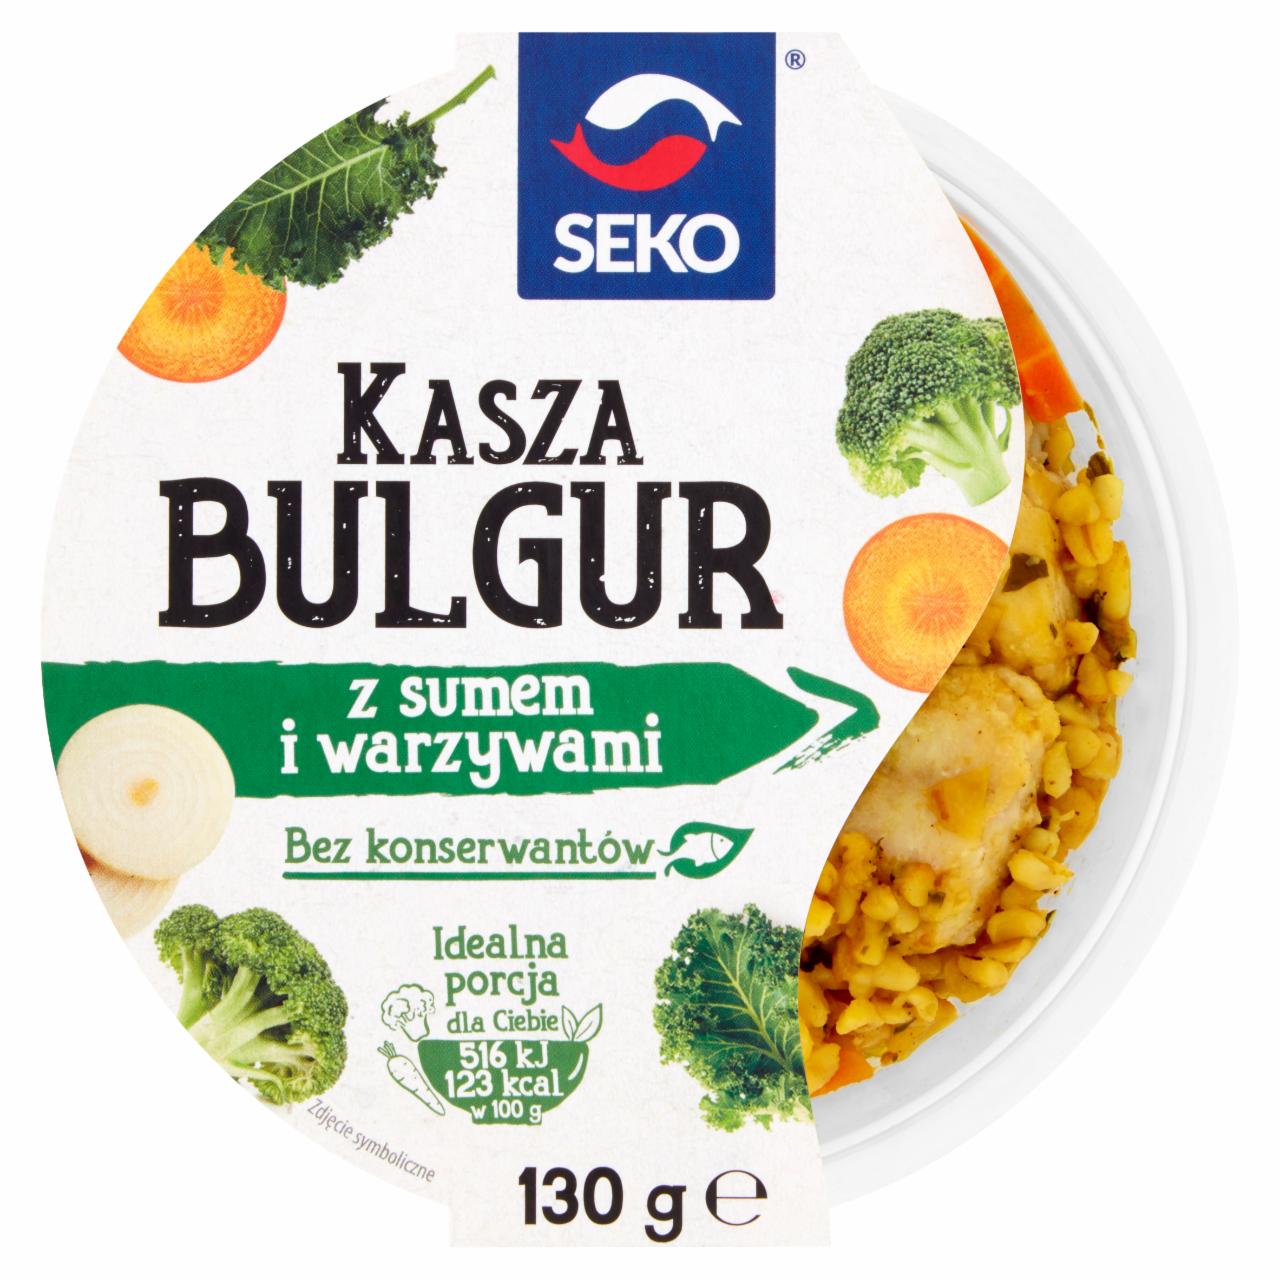 Zdjęcia - Seko Kasza bulgur z sumem i warzywami 130 g